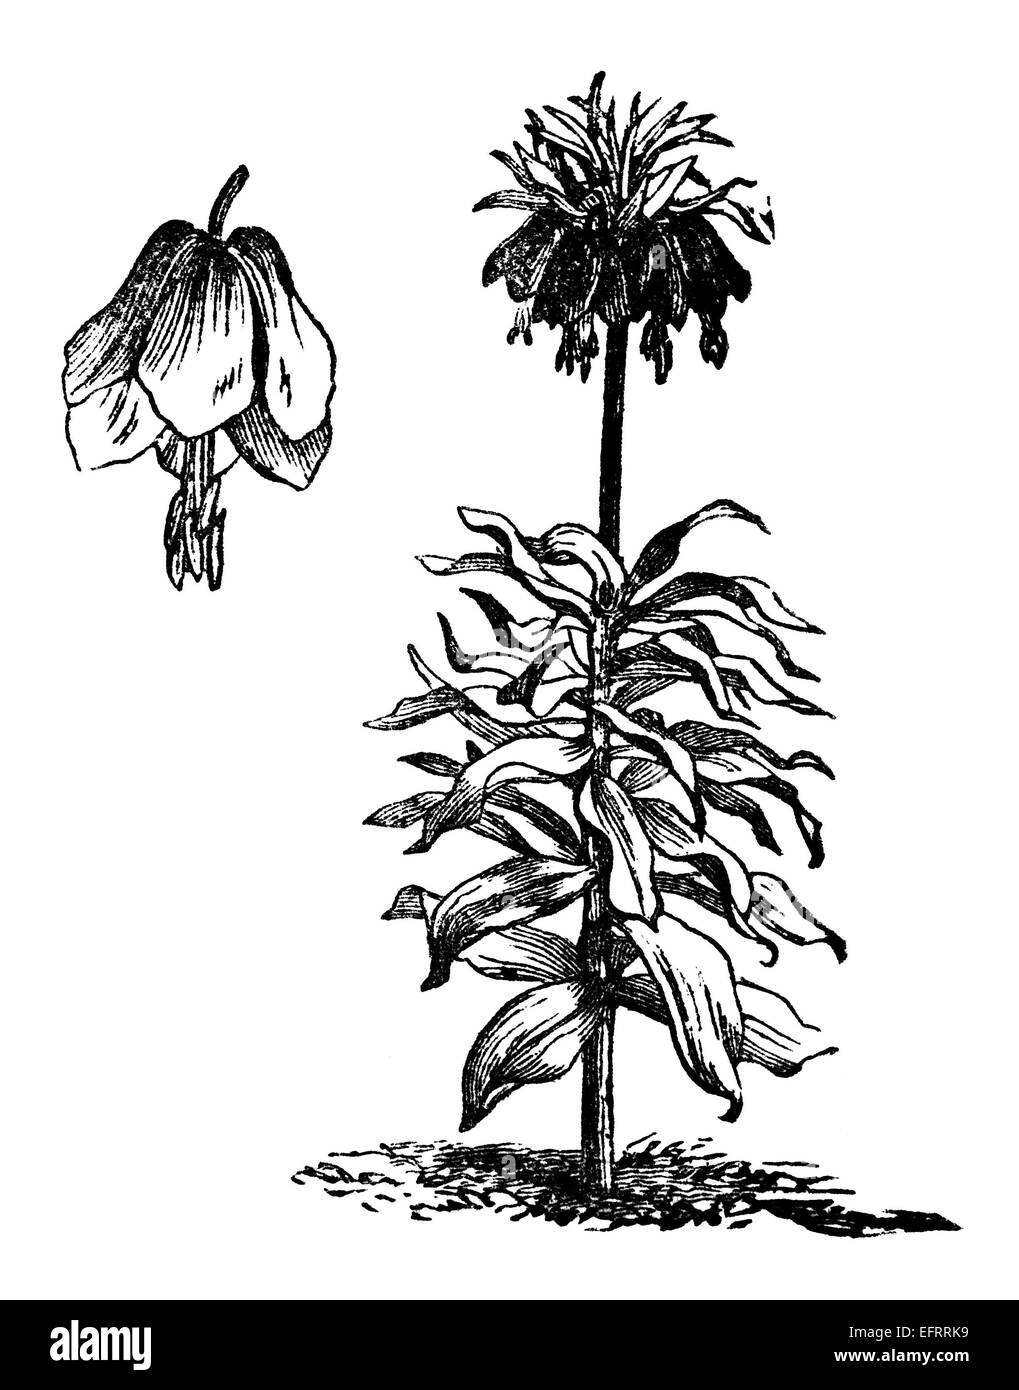 Victorian gravure d'une couronne impériale fleurs. Image restaurée numériquement à partir d'un milieu du xixe siècle l'encyclopédie. Banque D'Images